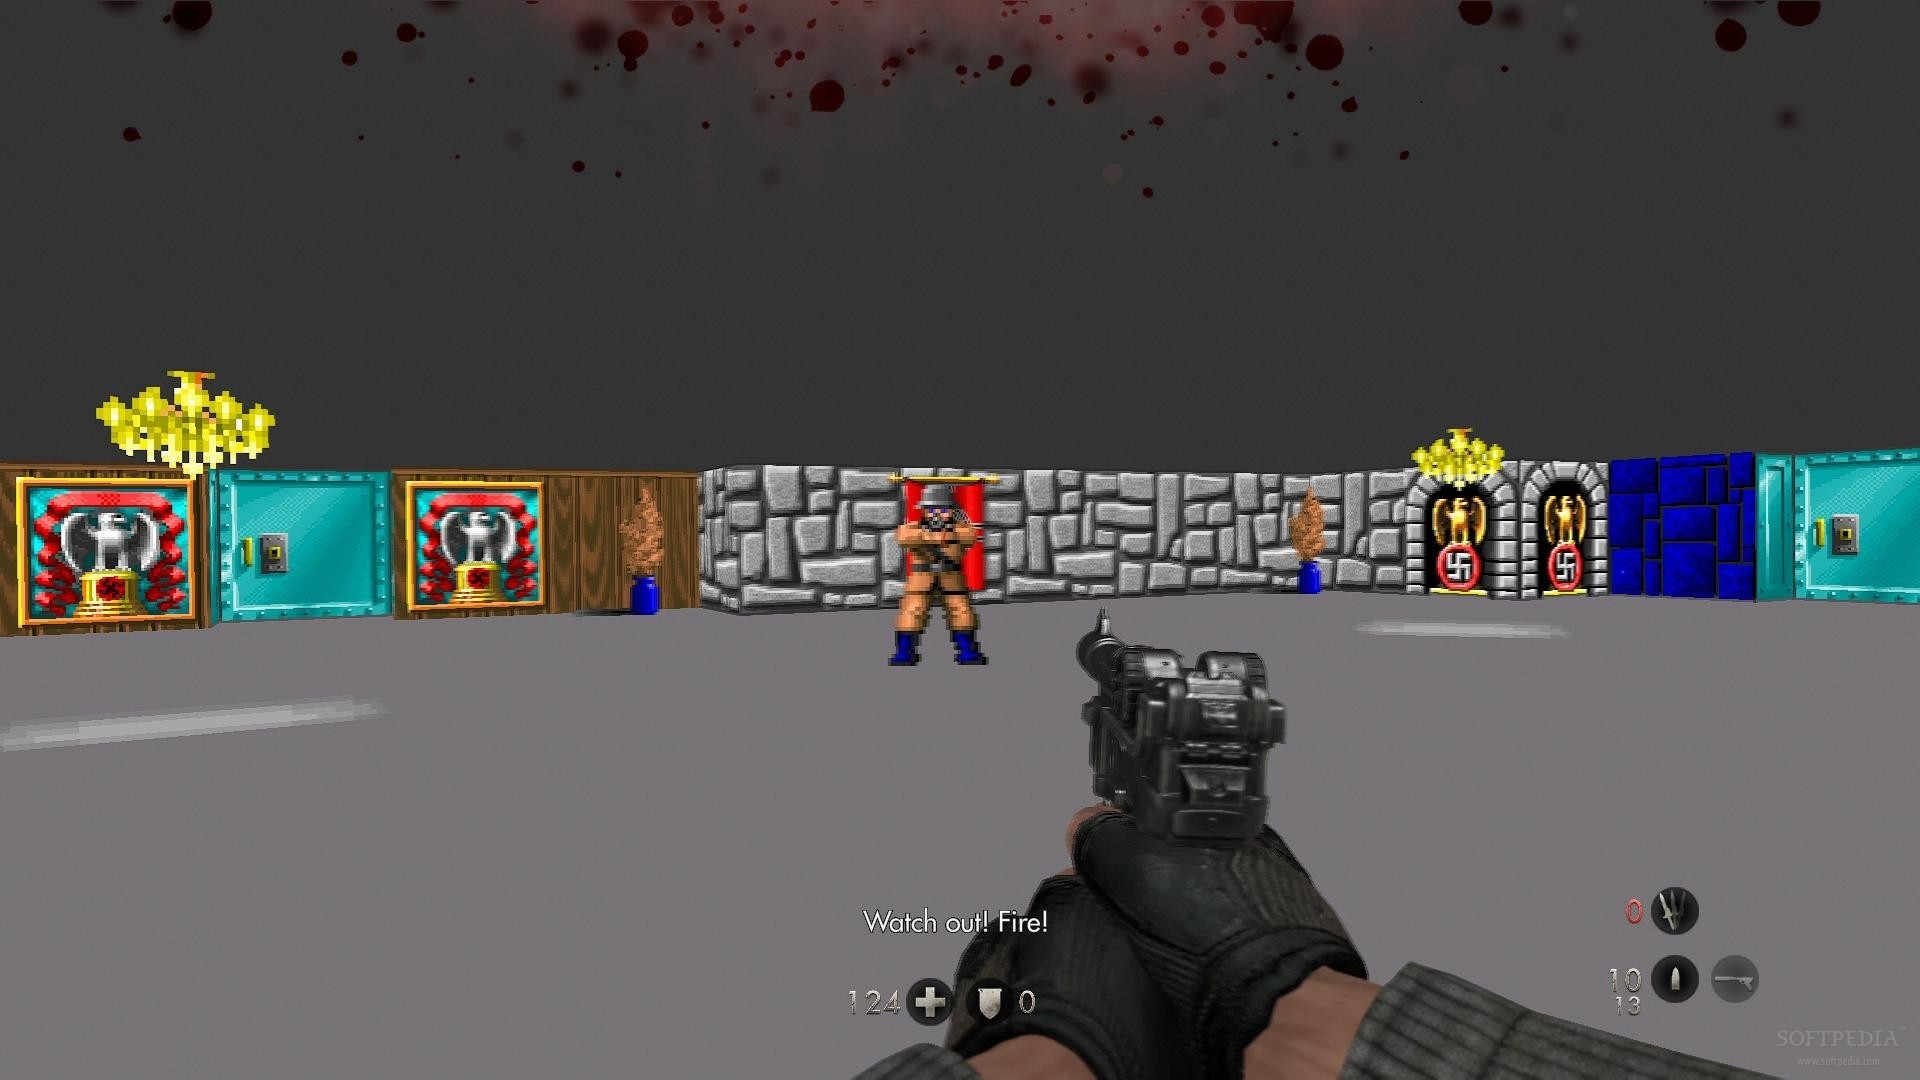 Wolfenstein: The Old Blood Features Nightmare Levels of Wolfenstein 3D